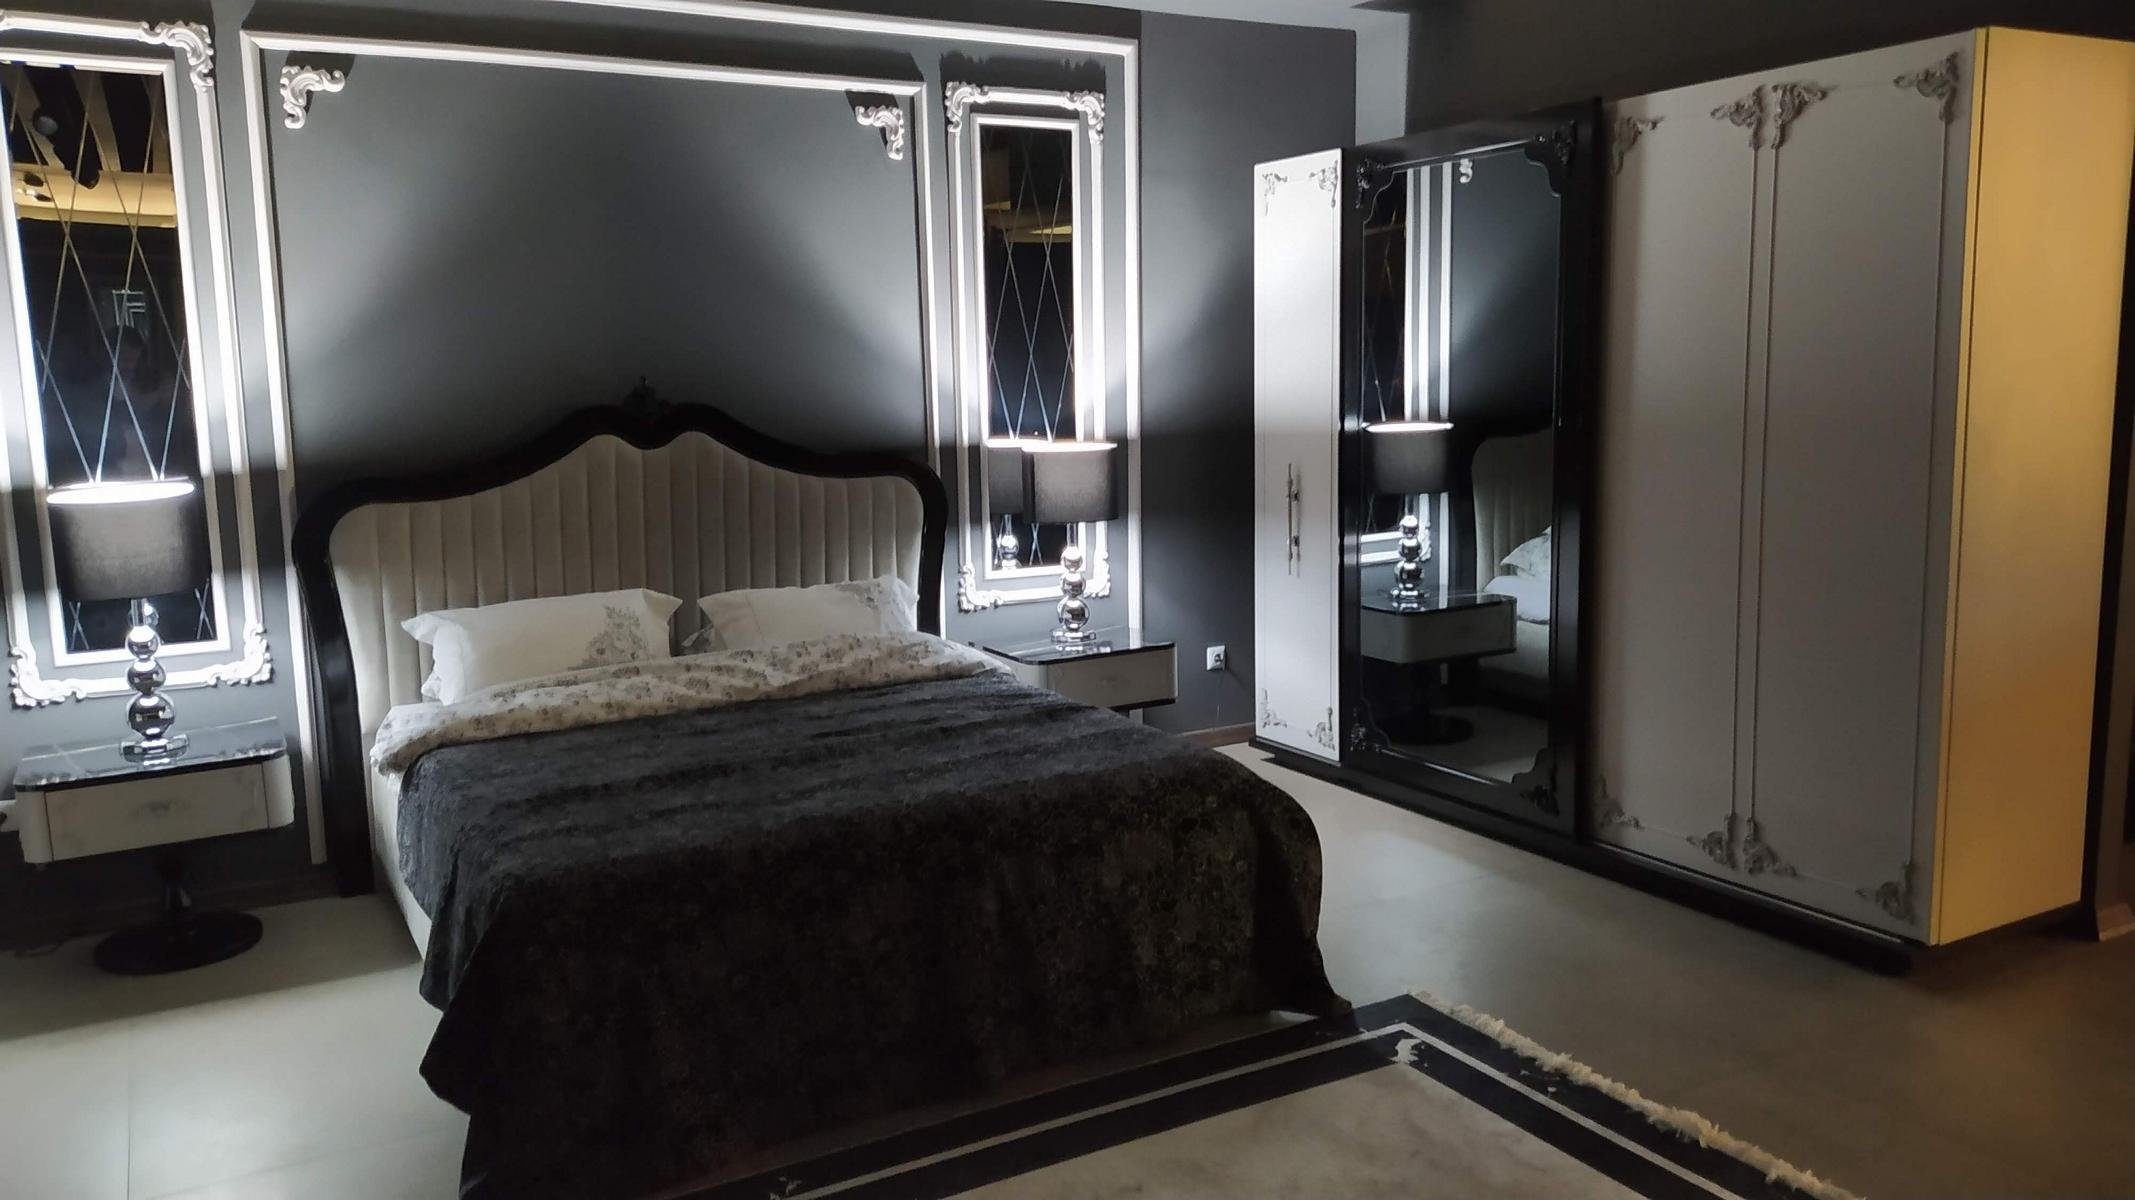 (Nur Beige Bett), Modern Made Design Europe in Polster Schlafzimmer Luxus Bett Bett JVmoebel